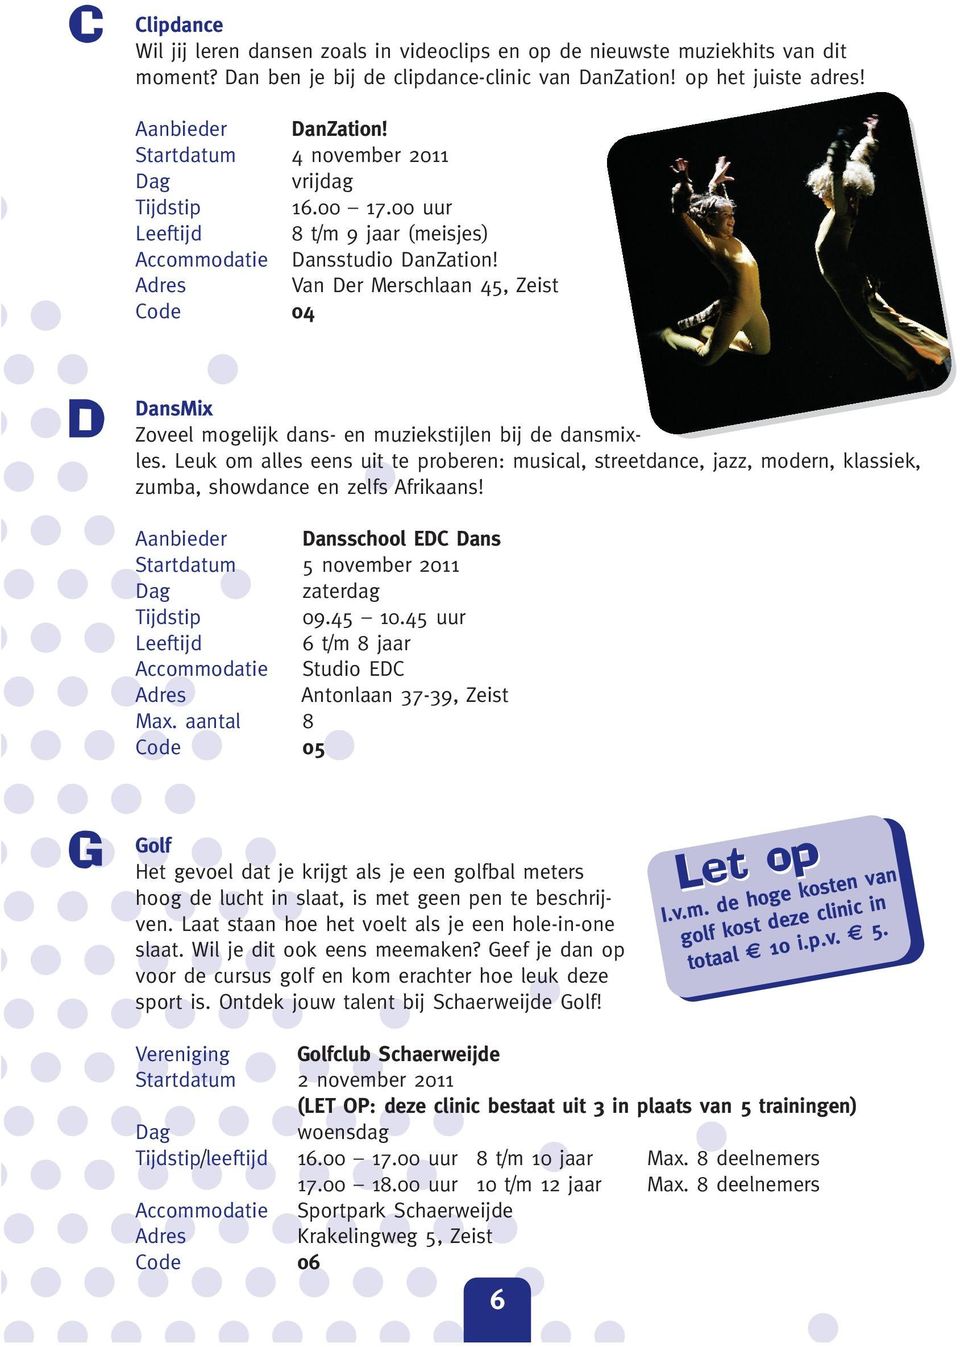 Adres Van Der Merschlaan 45, Zeist Code 04 D DansMix Zoveel mogelijk dans- en muziekstijlen bij de dansmixles.